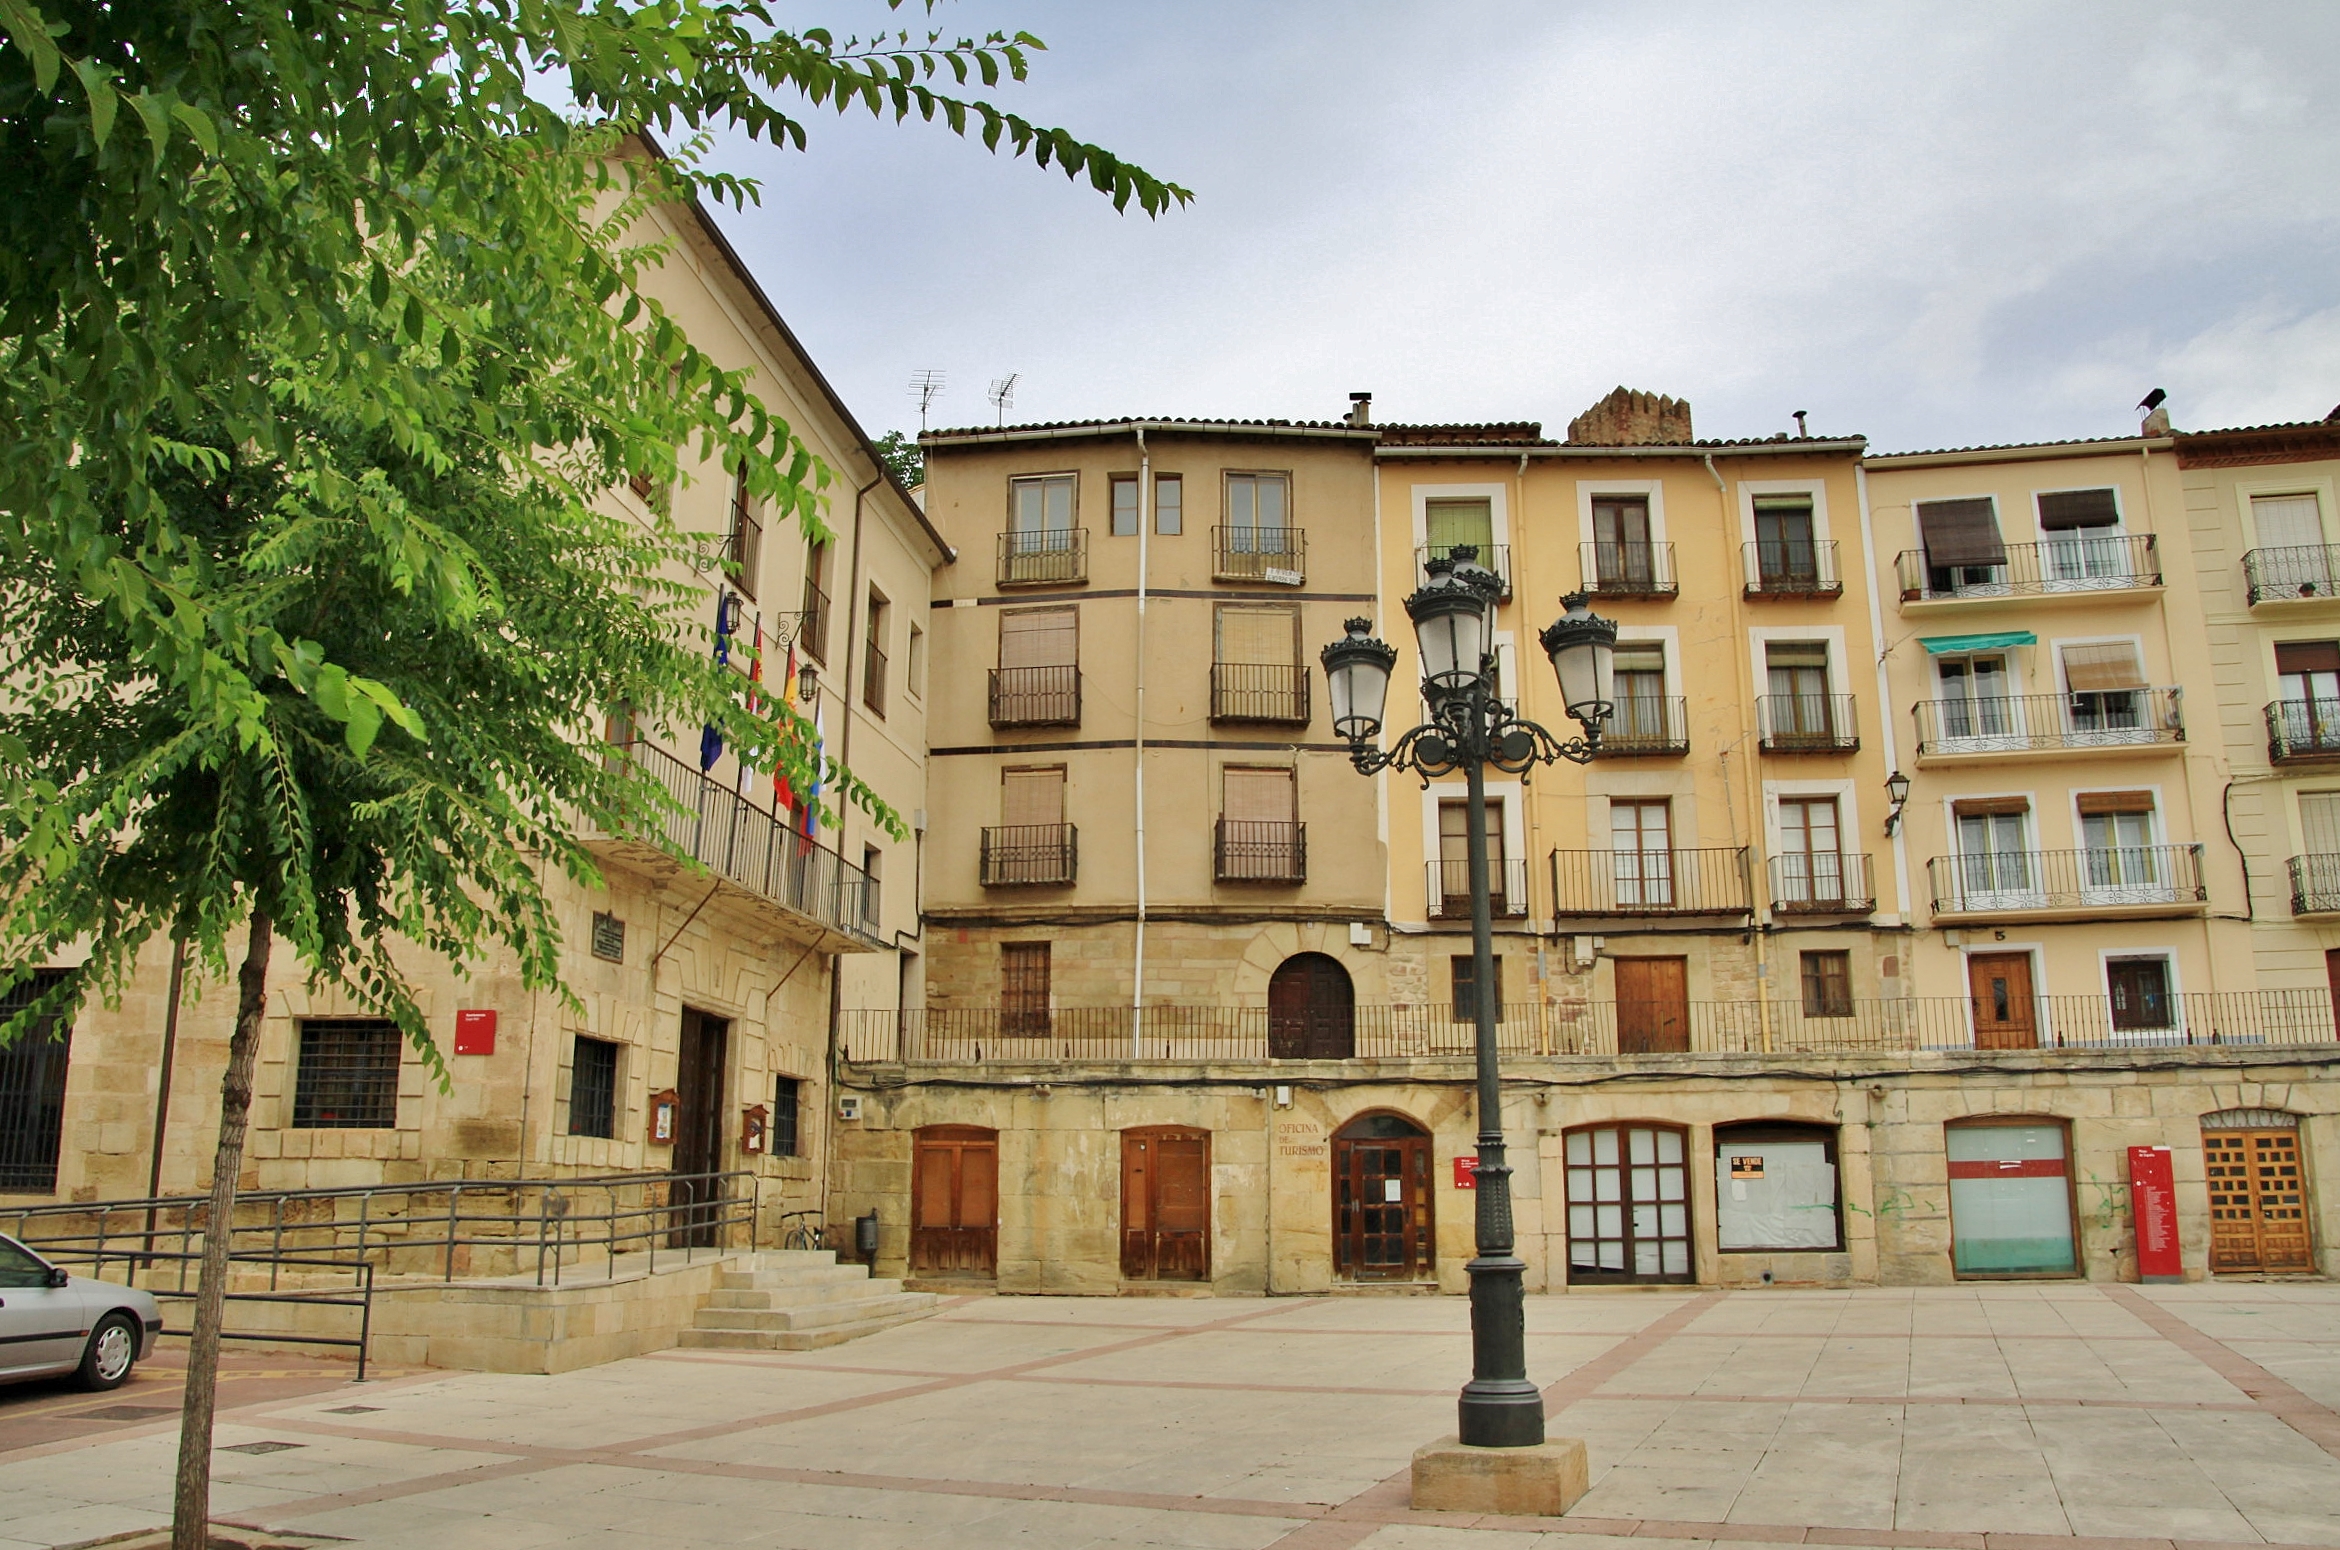 Foto: Plaza de España - Molina de Aragón (Guadalajara), España